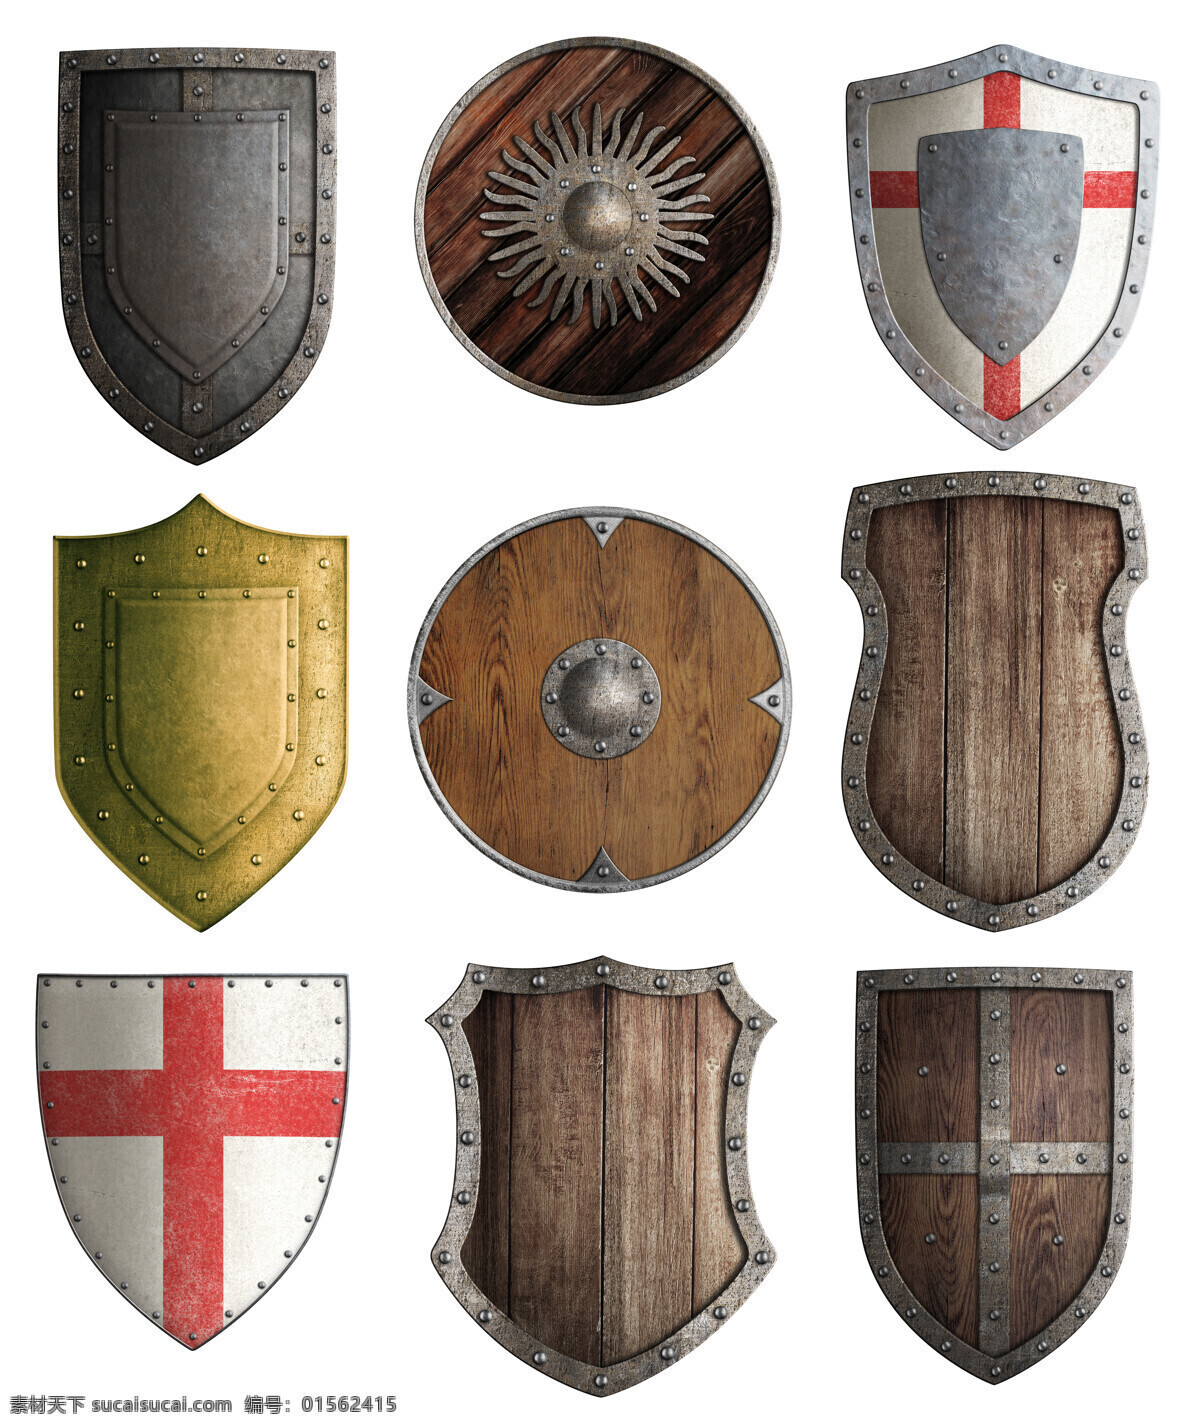 中世纪骑士 士兵金属盾牌 头盔 盔甲 金属盾牌